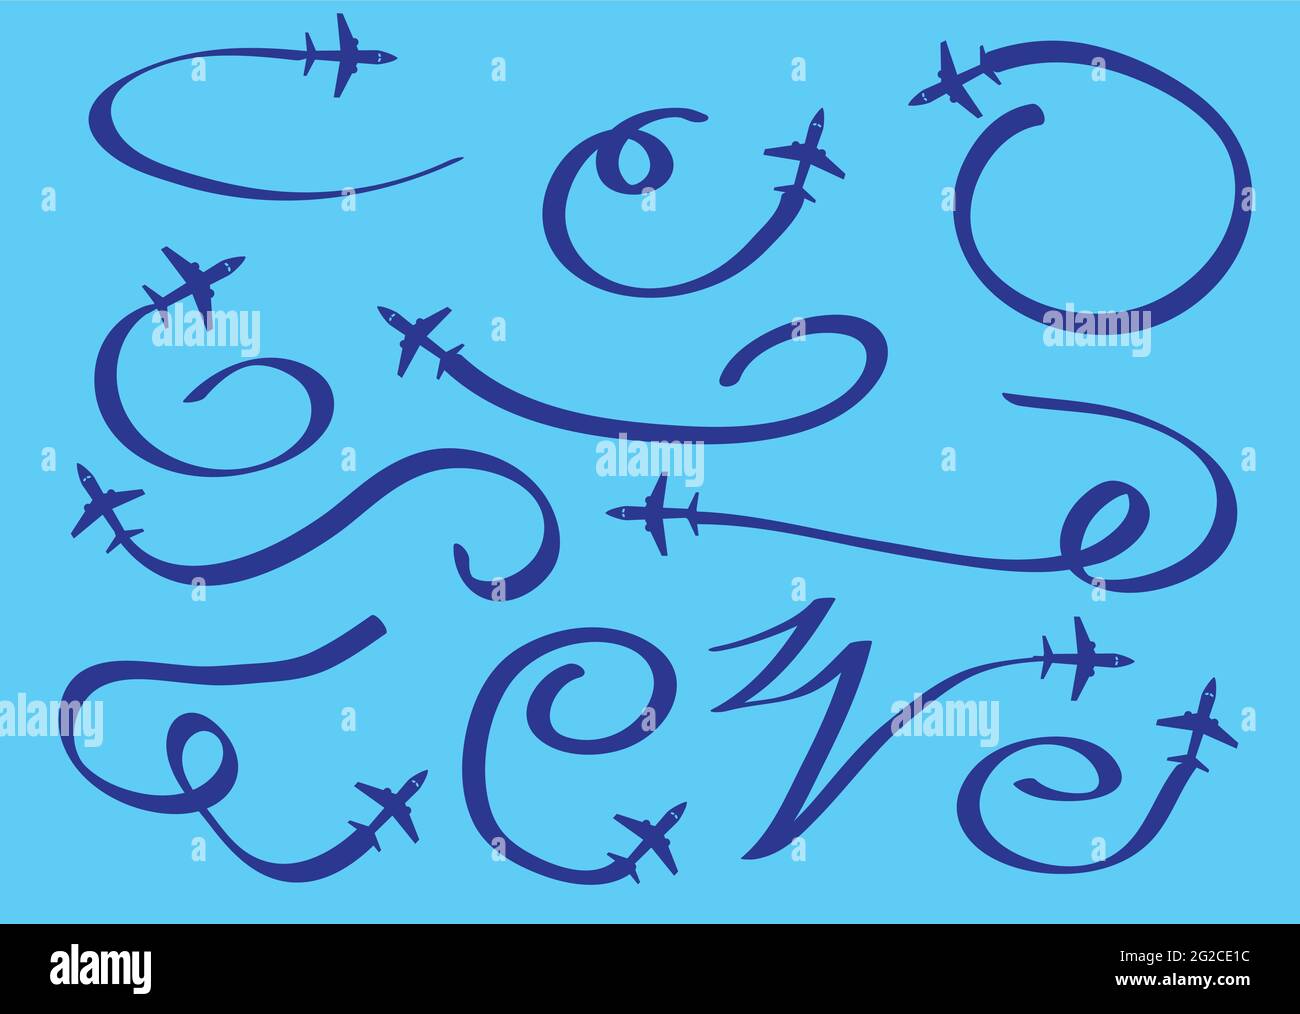 Vektor-Illustration von Cartoon-Flugzeug im Flug und verlassen stilisierte wirbelige Wege isoliert auf blauem Hintergrund. Stock Vektor